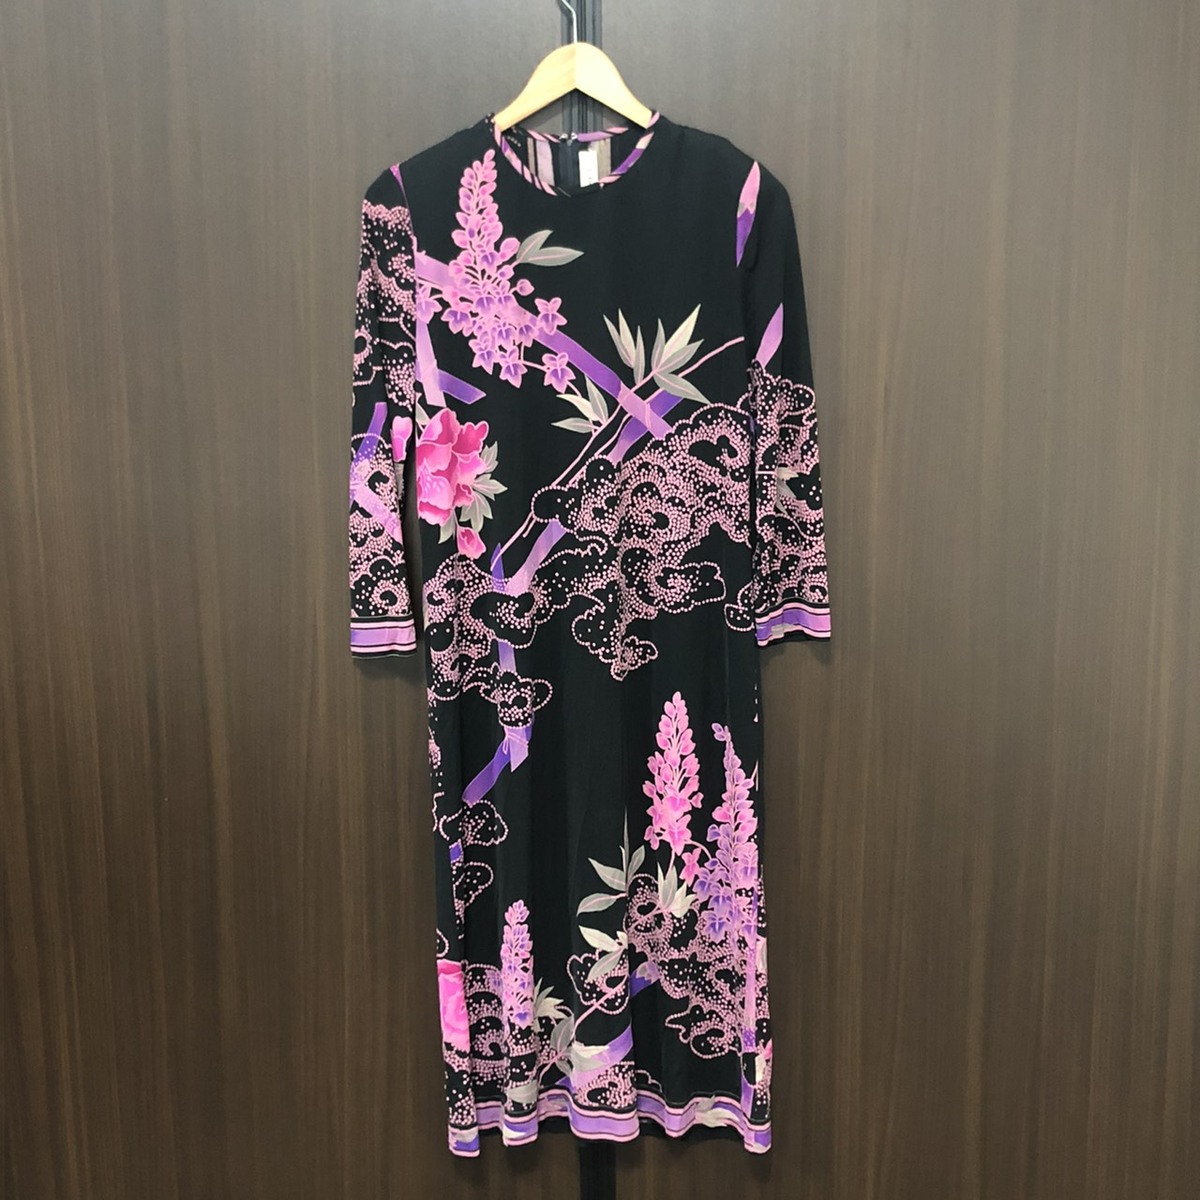 レオナールの洋服のブラック×ピンク フラワープリント ニット ロングワンピースの買取価格・実績 2020年10月5日公開情報｜ブランド買取の